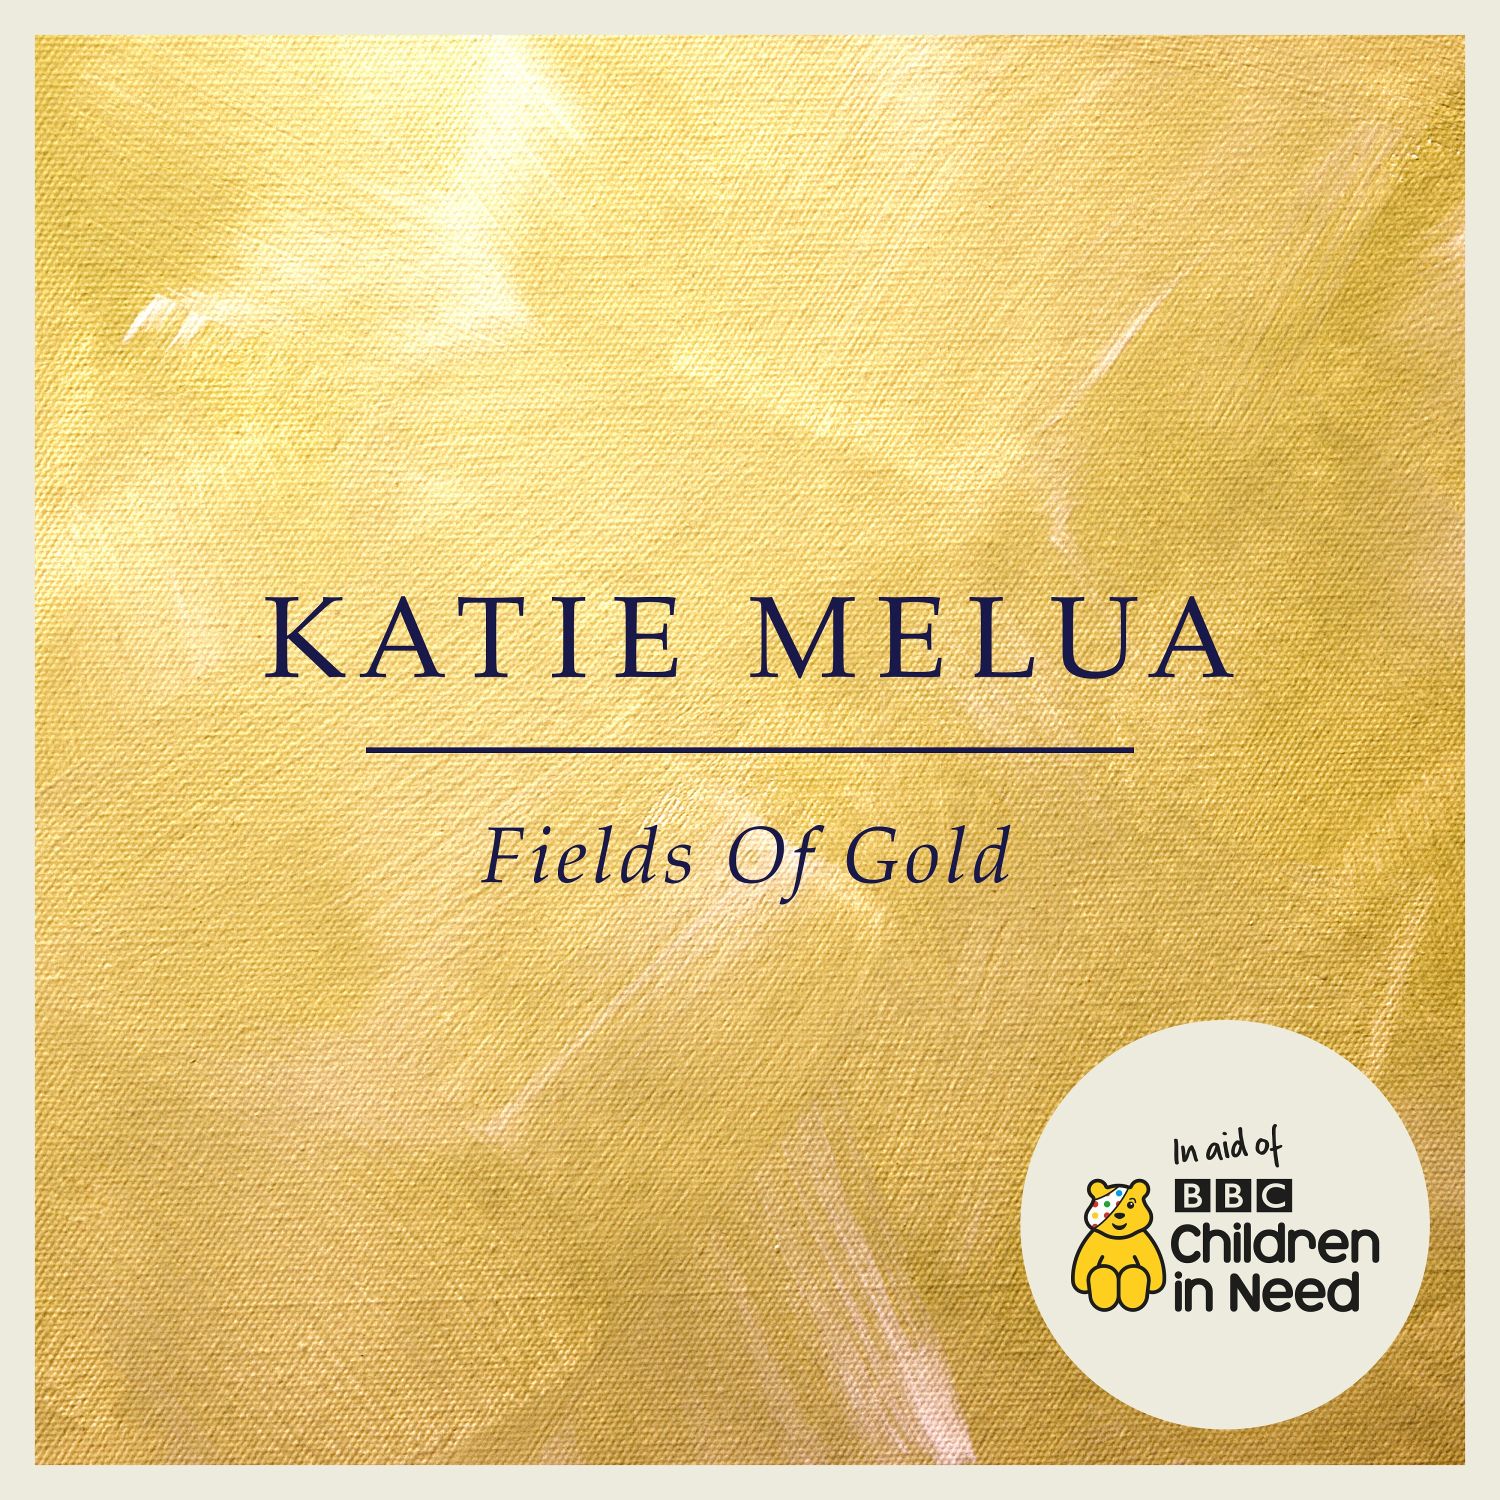 Katie Melua's Fields Of Gold